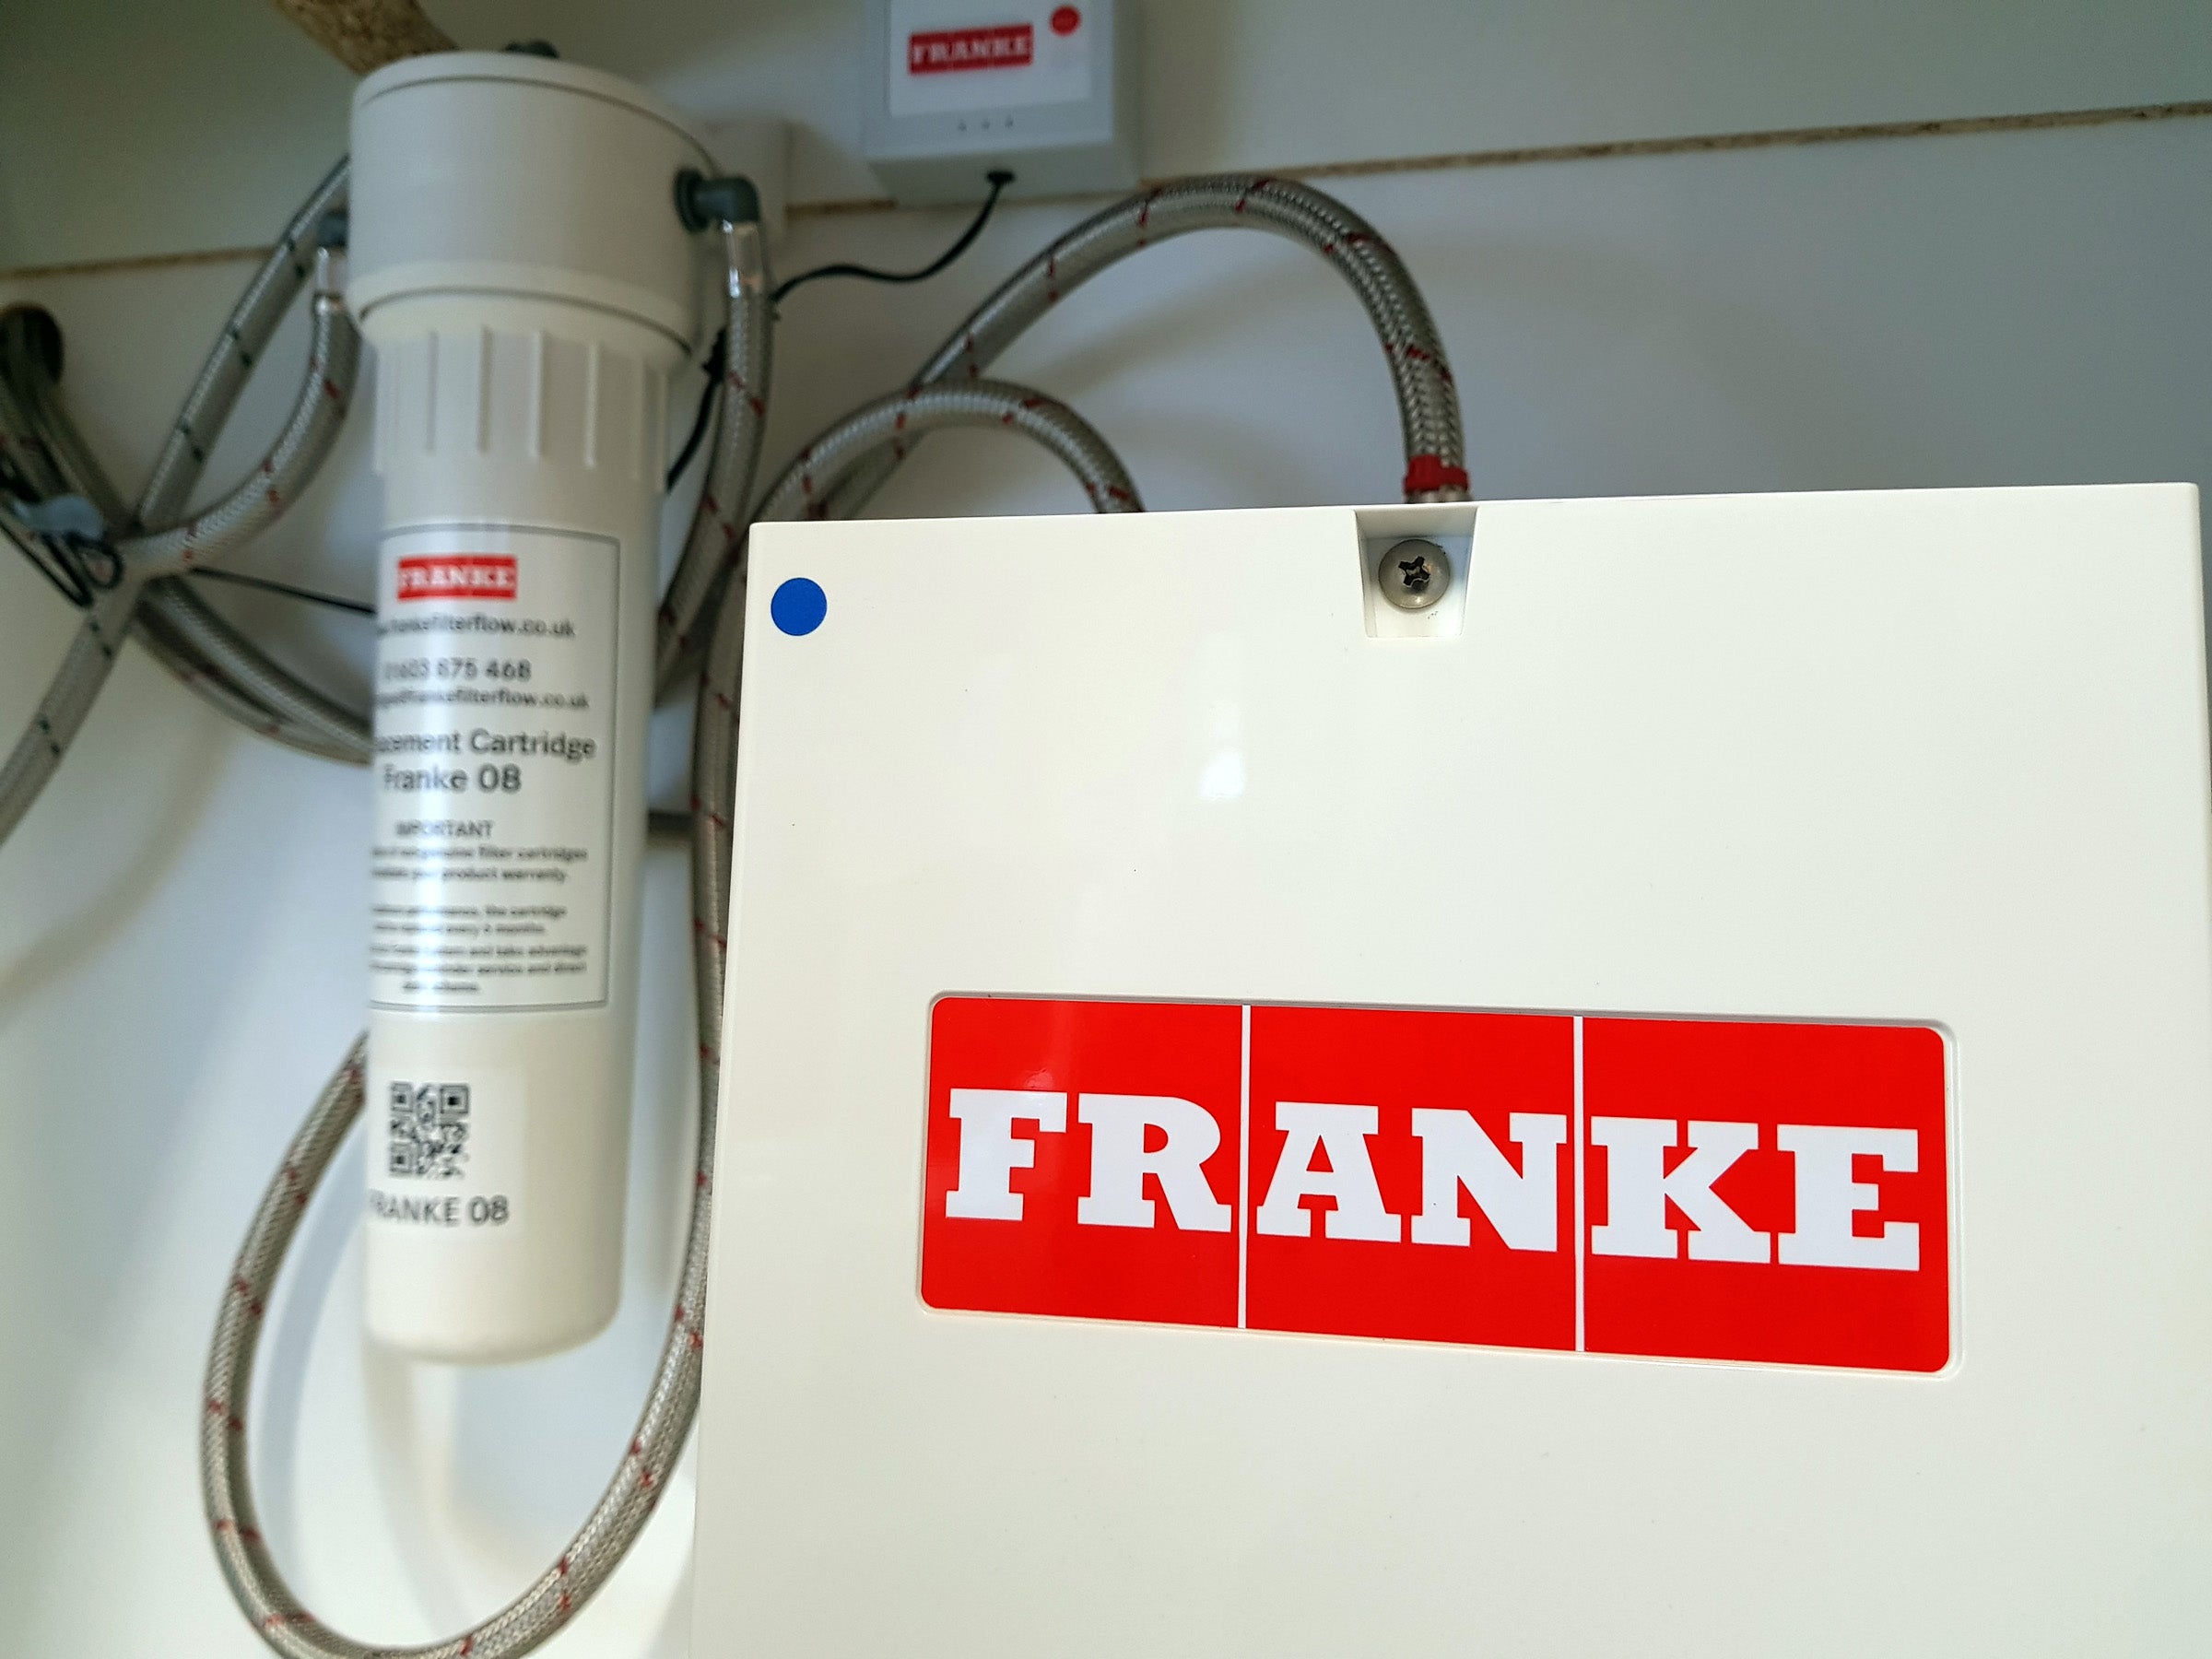 Franke filter system with logo on boiler under sink.